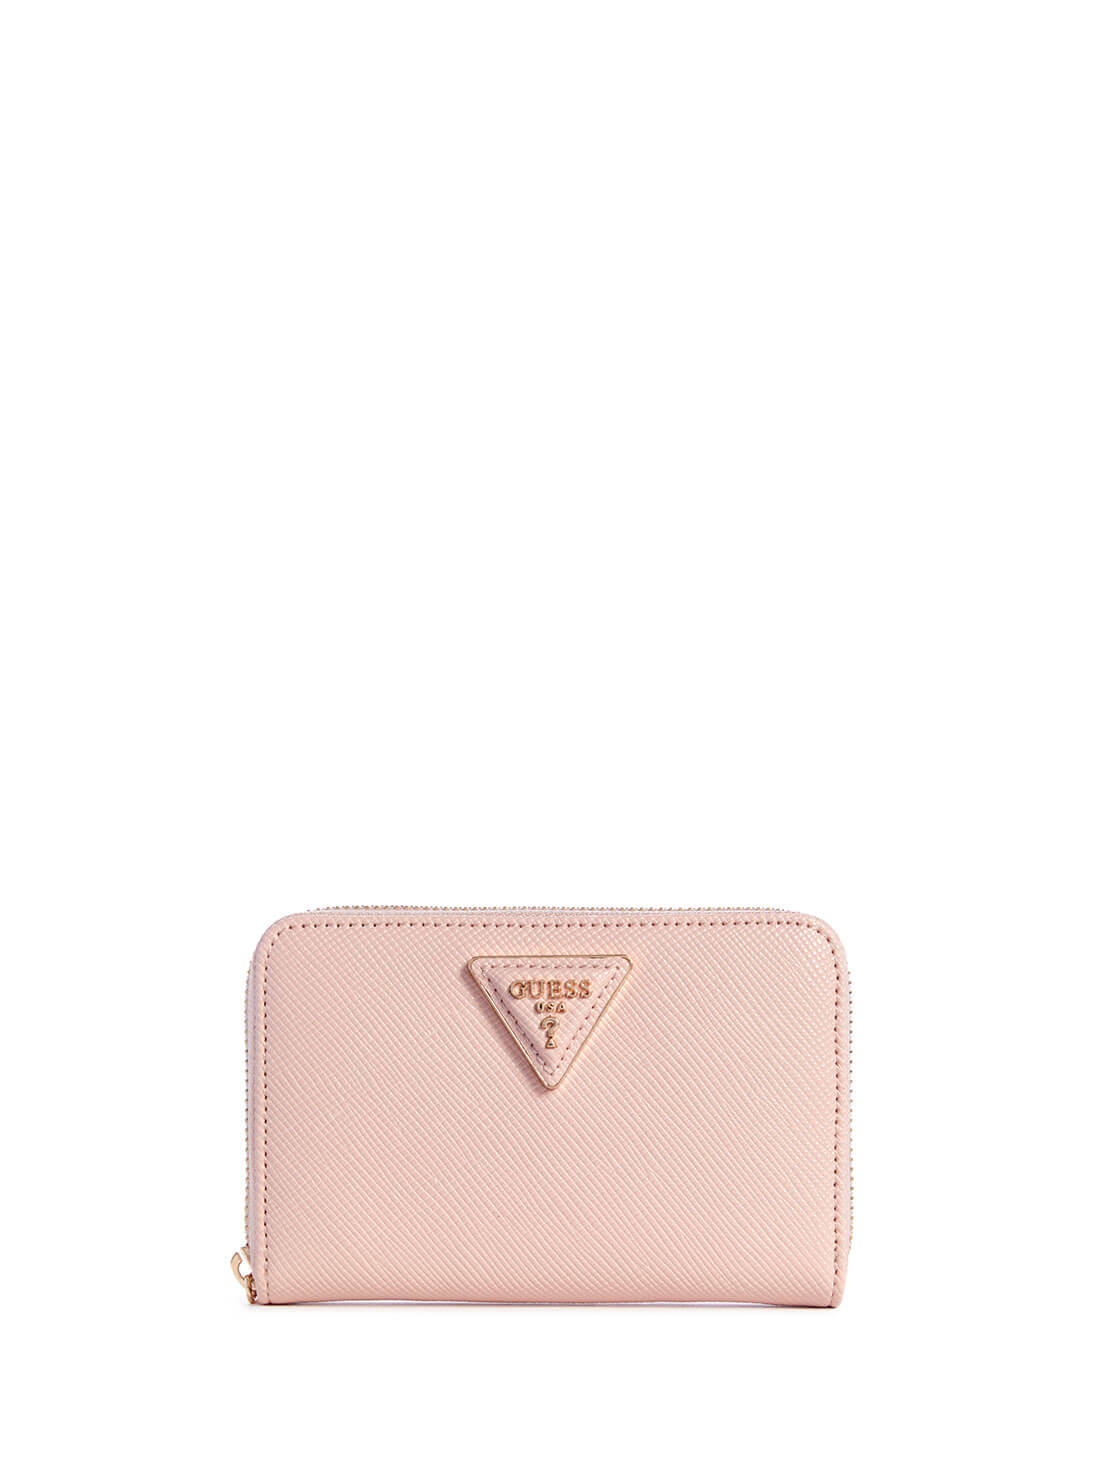 Women's Blush Pink Brynlee Medium Wallet front view